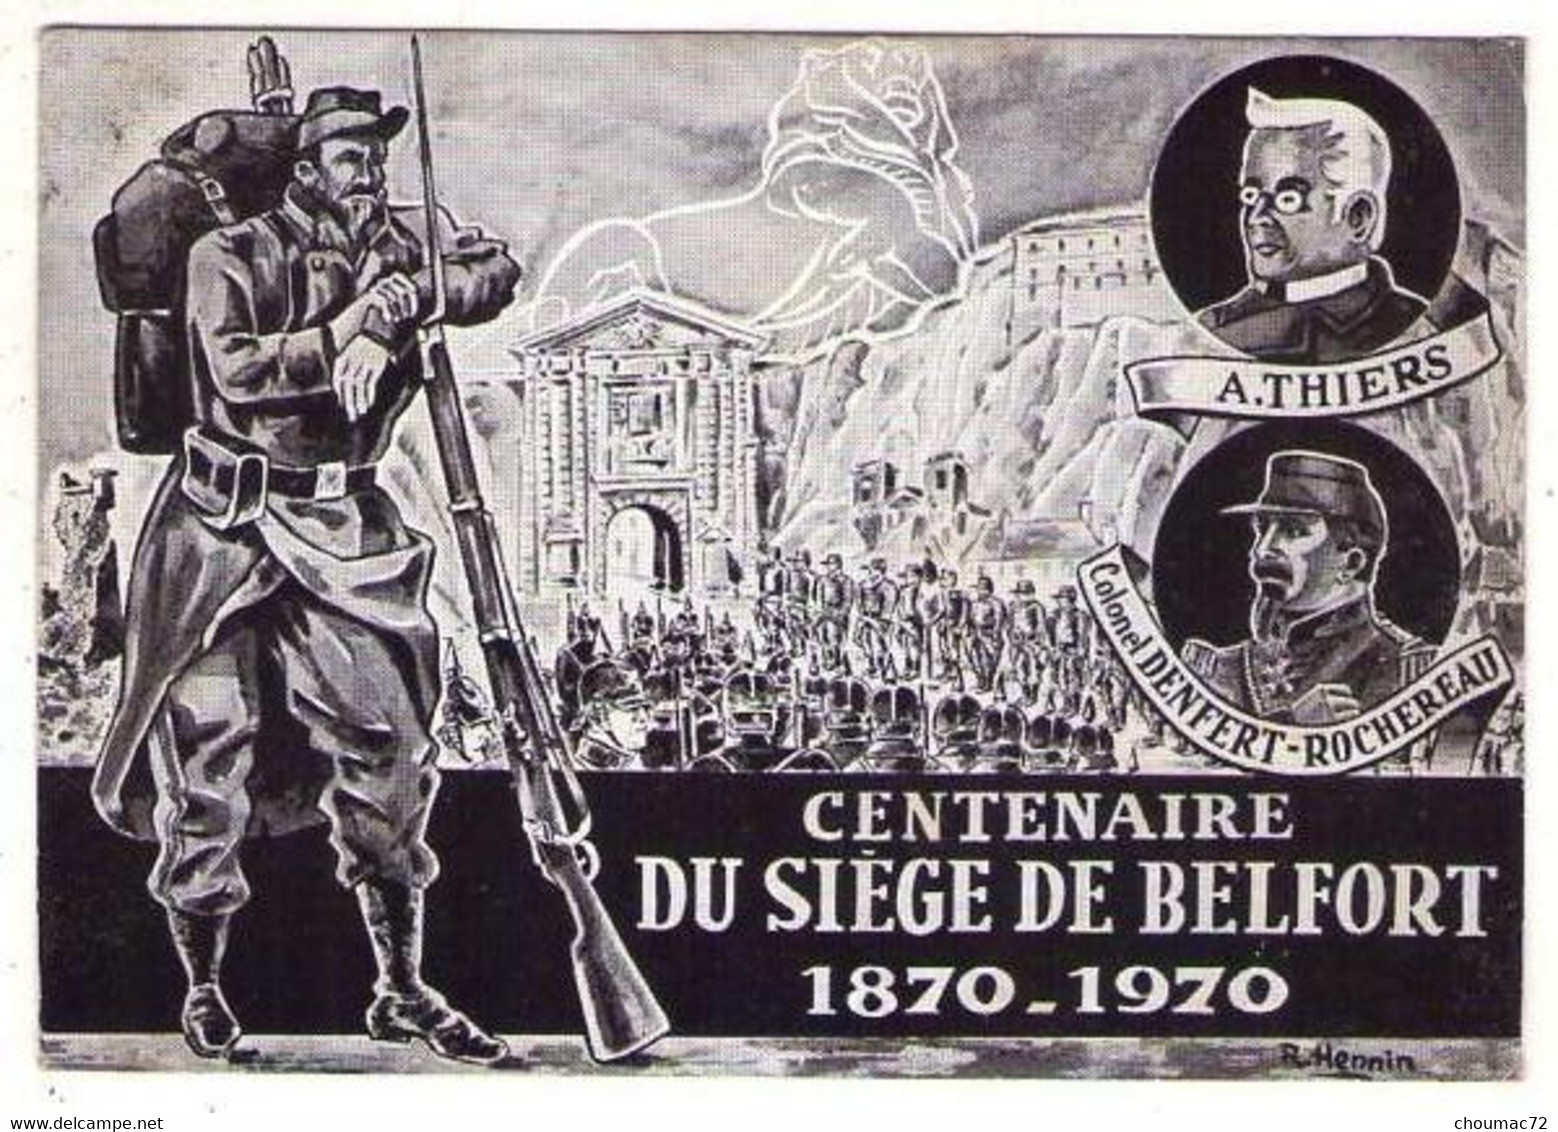 GF (90) 082, Siège De Belfort, R Hennin, Centenaire Du Siège De Belfort - Belfort – Siège De Belfort